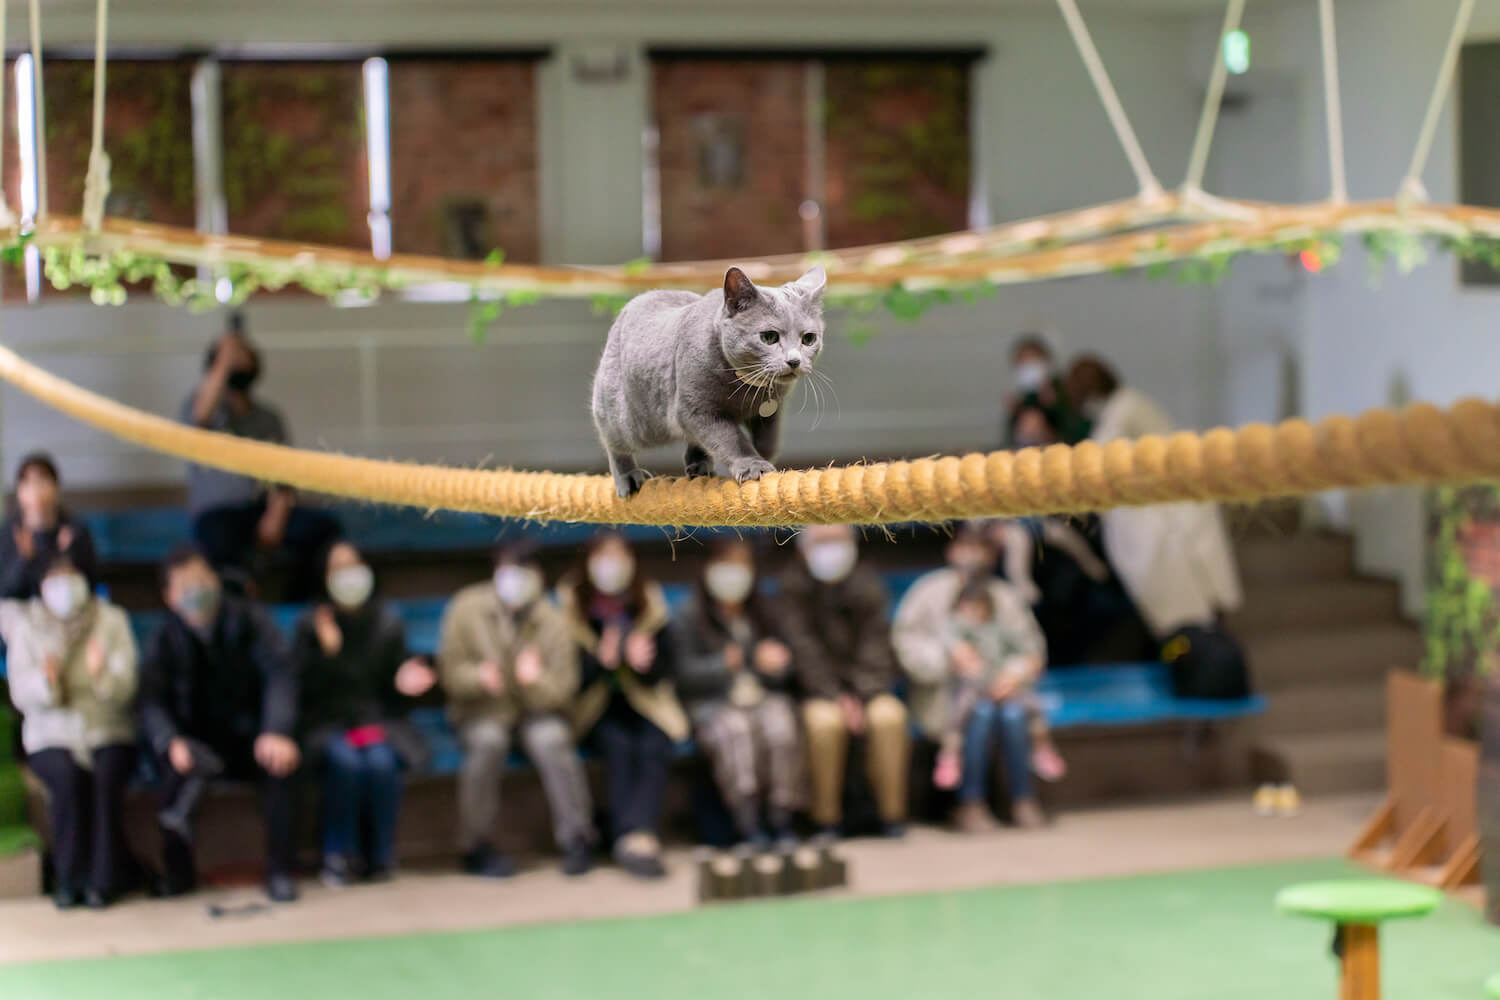 パフォーマンスショー「ザ・キャッツ」で綱渡りをする猫 by 那須どうぶつ王国